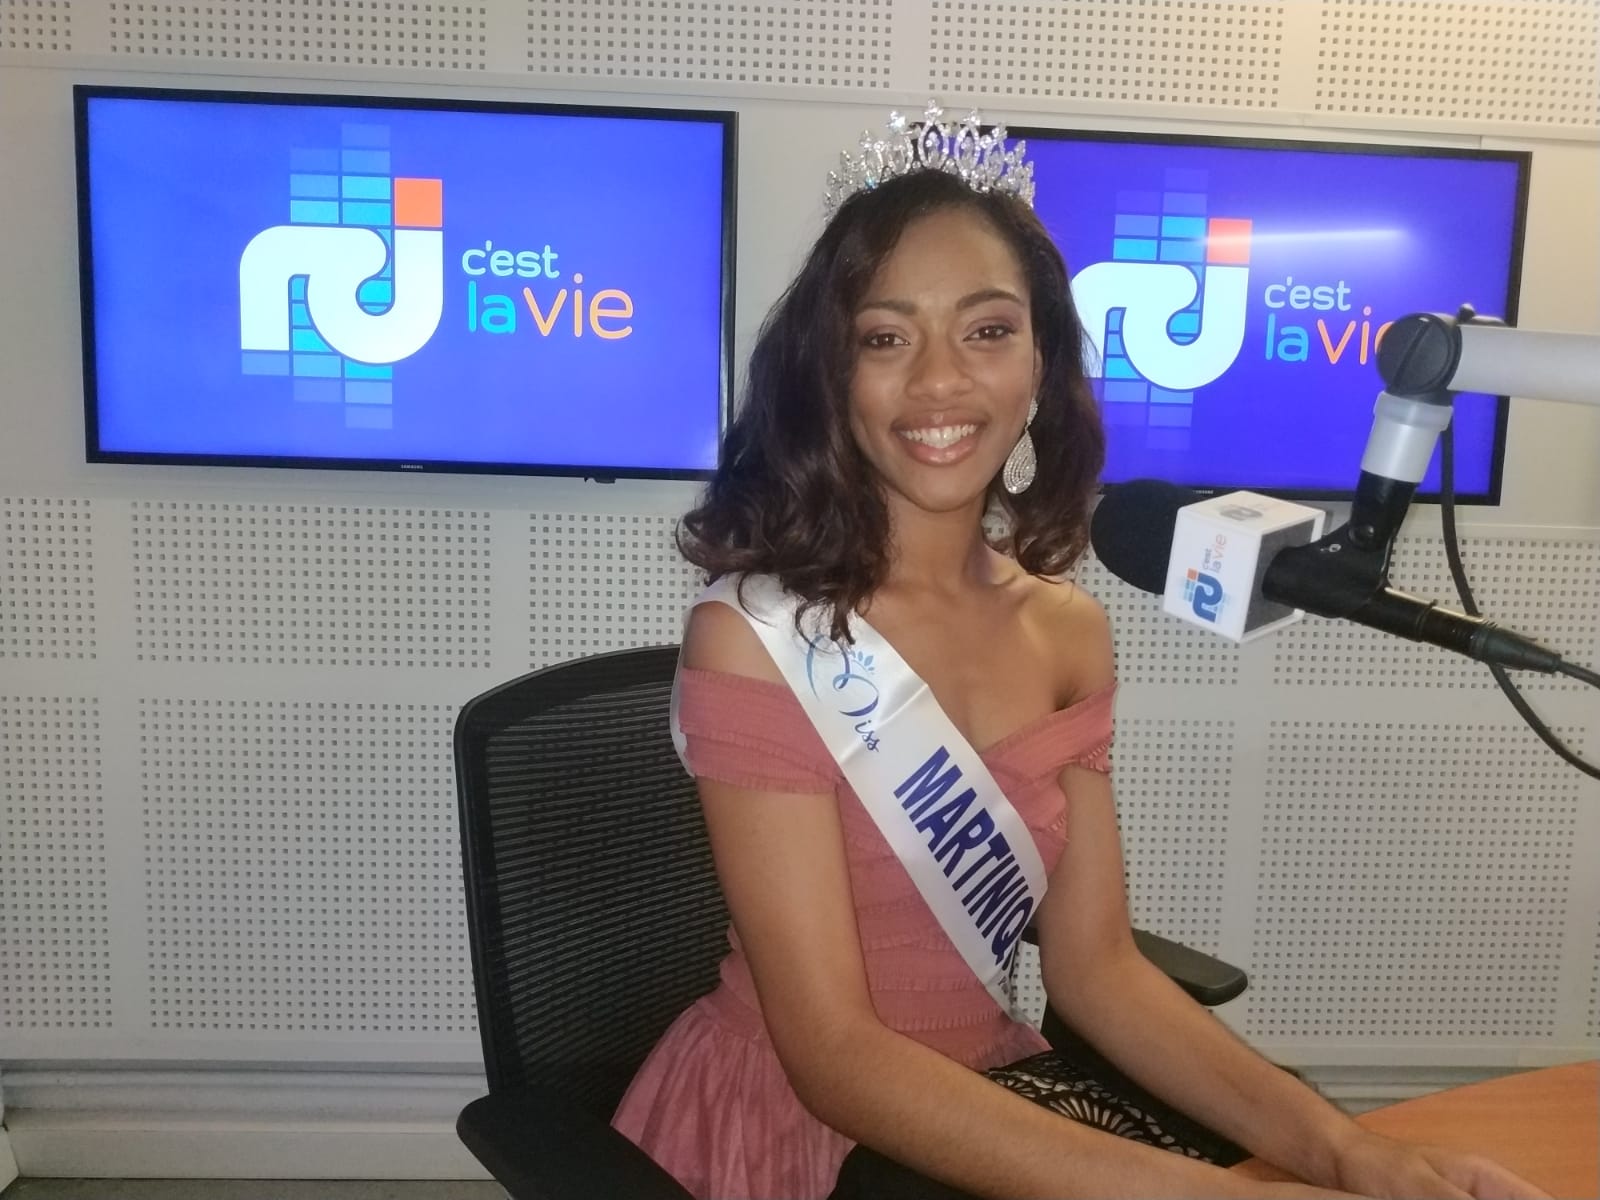     Ambre Bozza est la miss Martinique 2019

